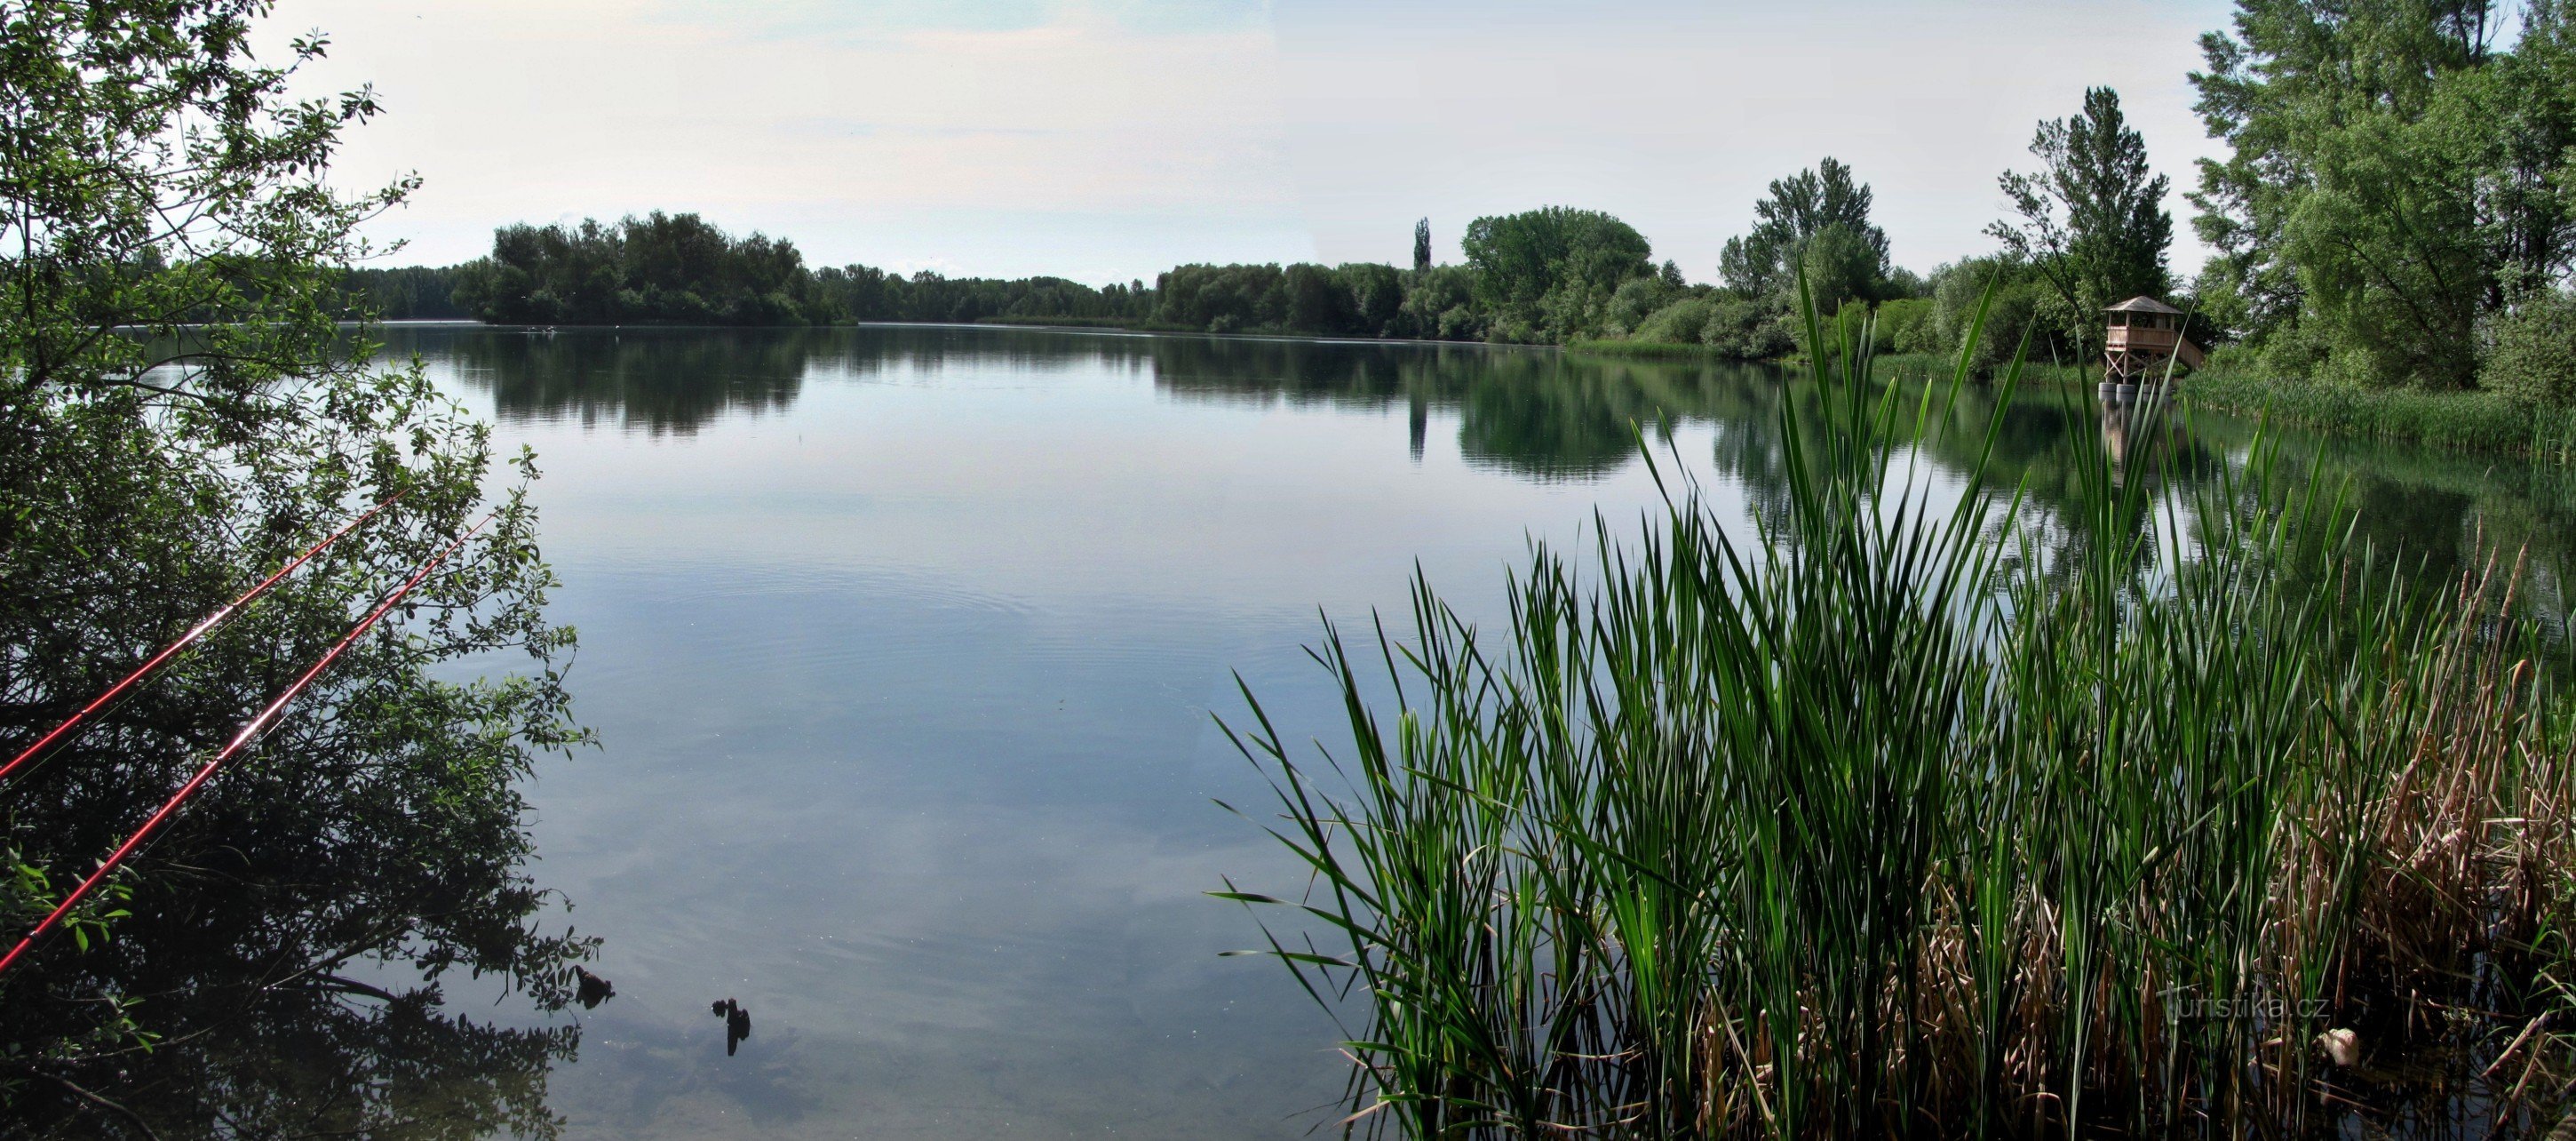 Хомутов (біля Оломоуца) - обсерваторія птахів на озері Хомутов